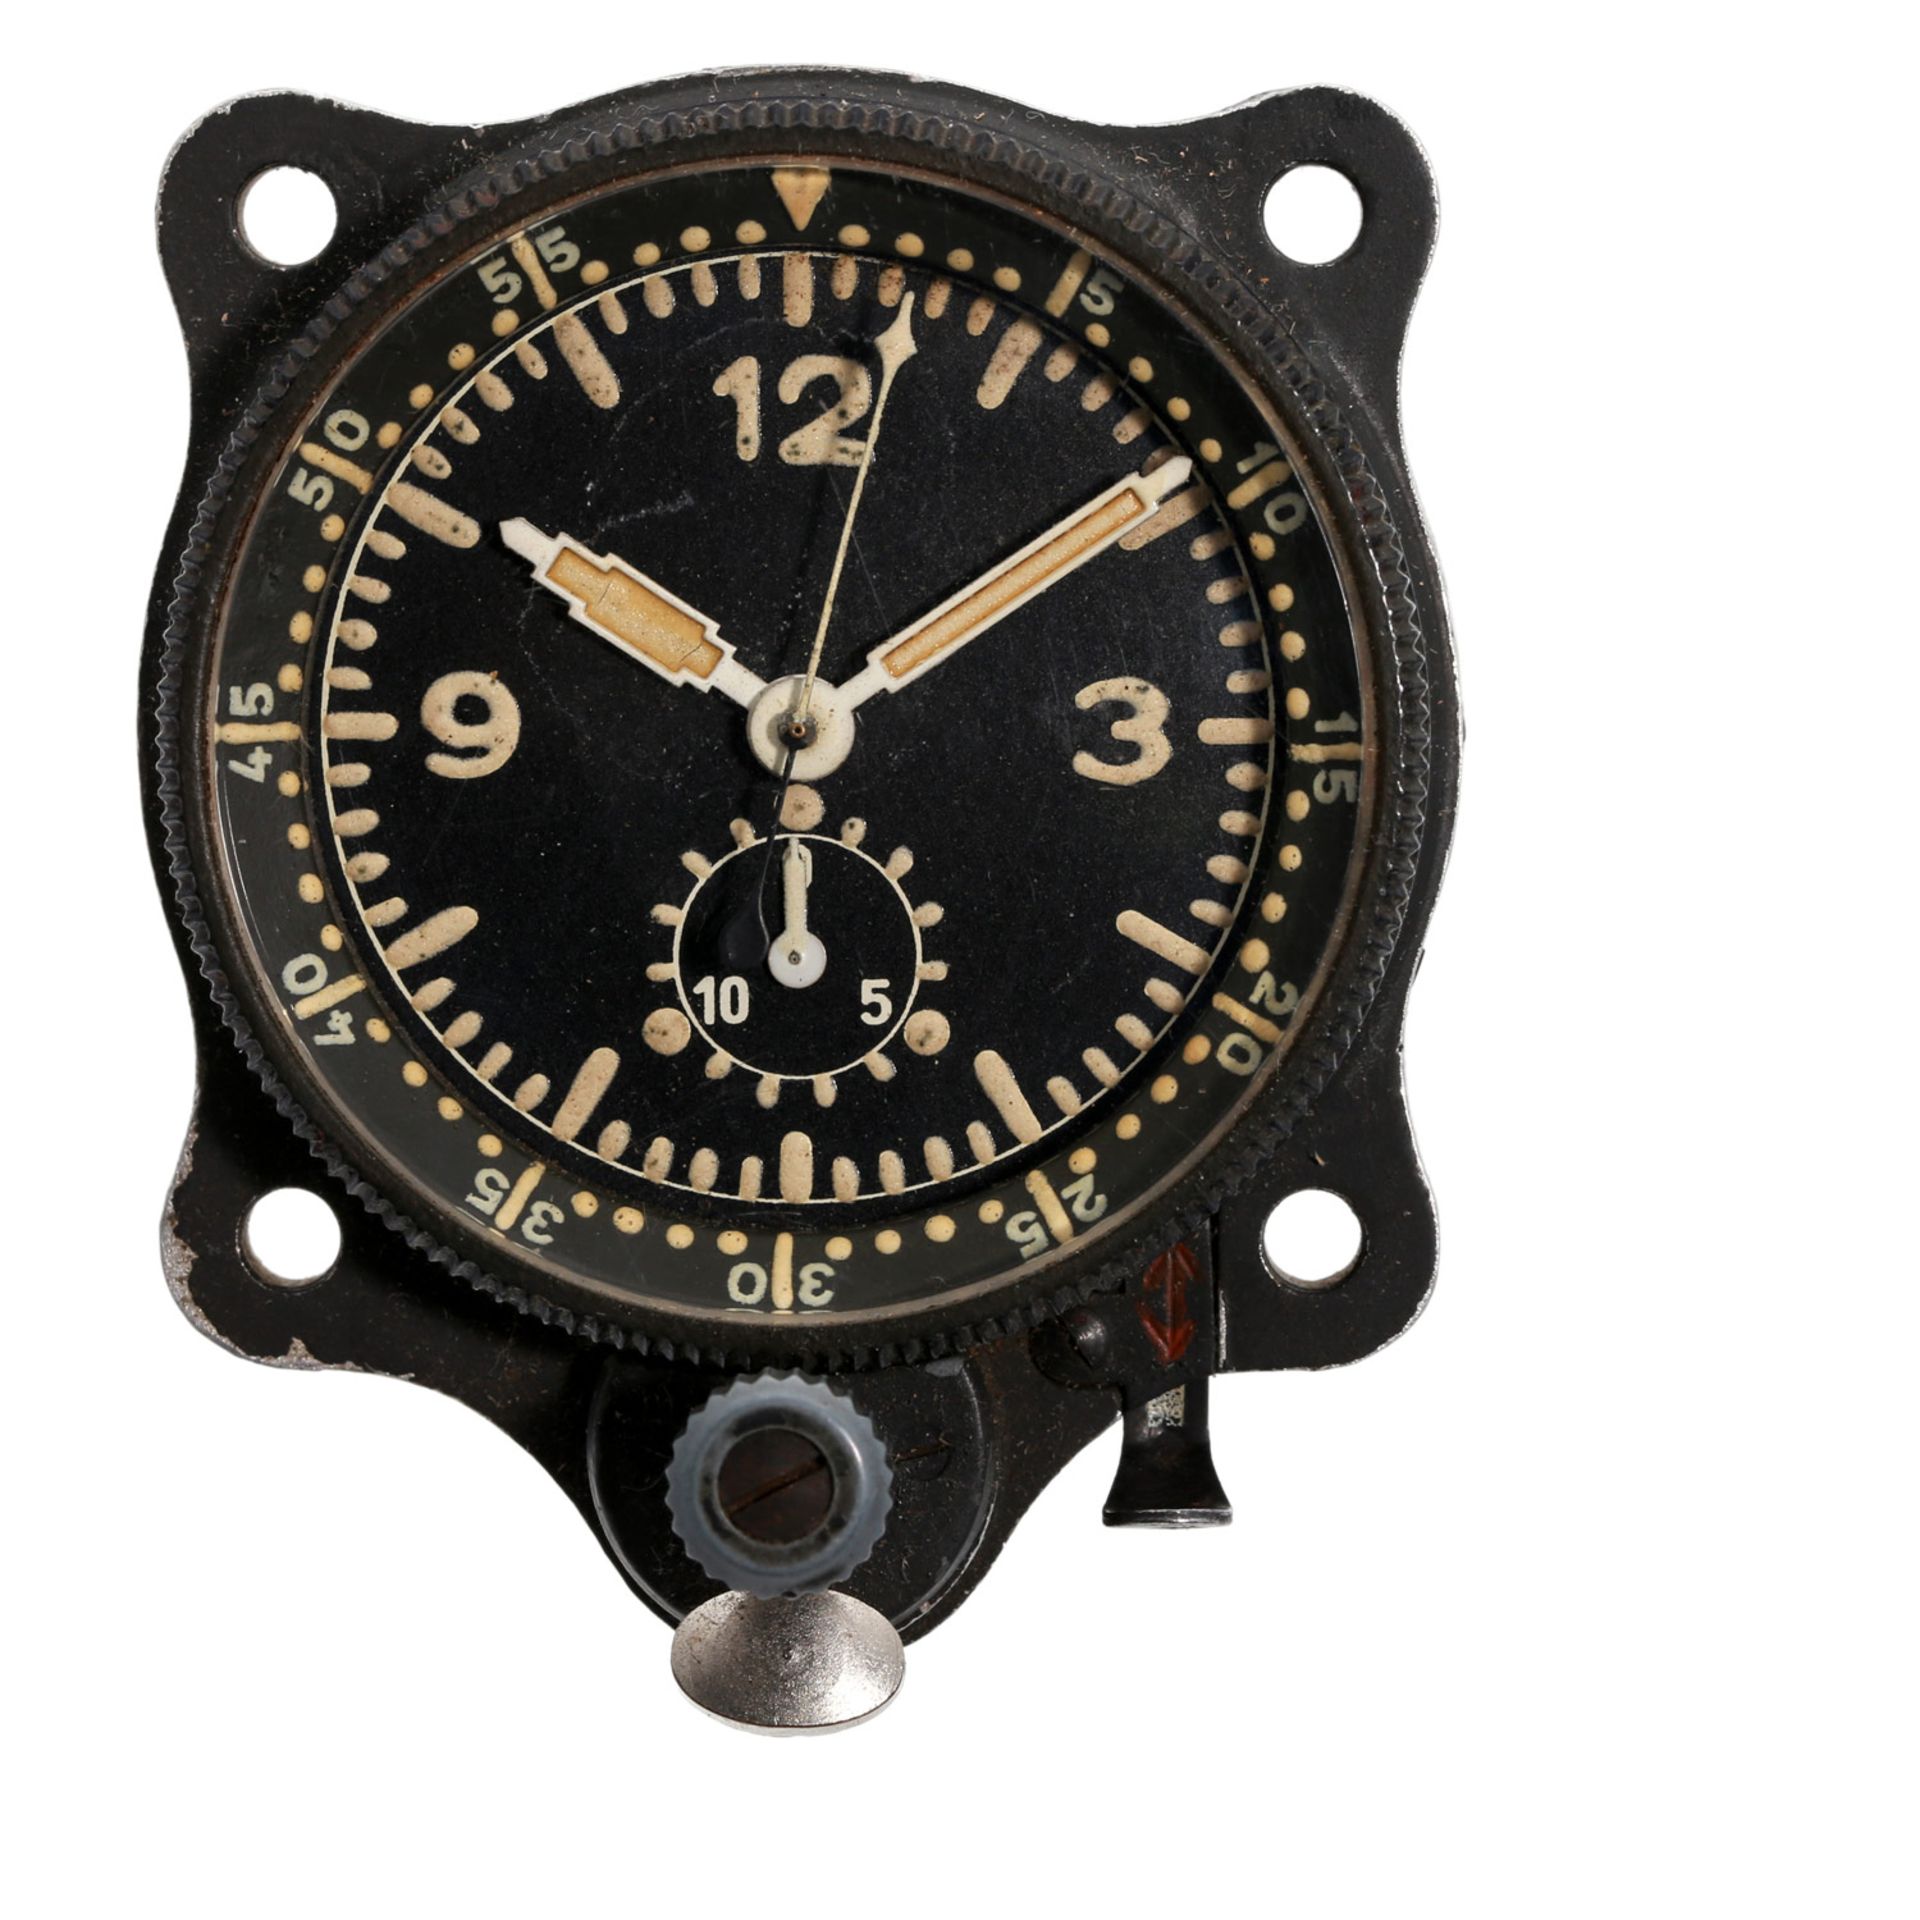 Bord-Uhr/Cockpit-Uhr, ca. 1940er Jahre, Anforderungszeichen FL 23885. Gerät-Nr.: 127-553A. Werk-Nr.: